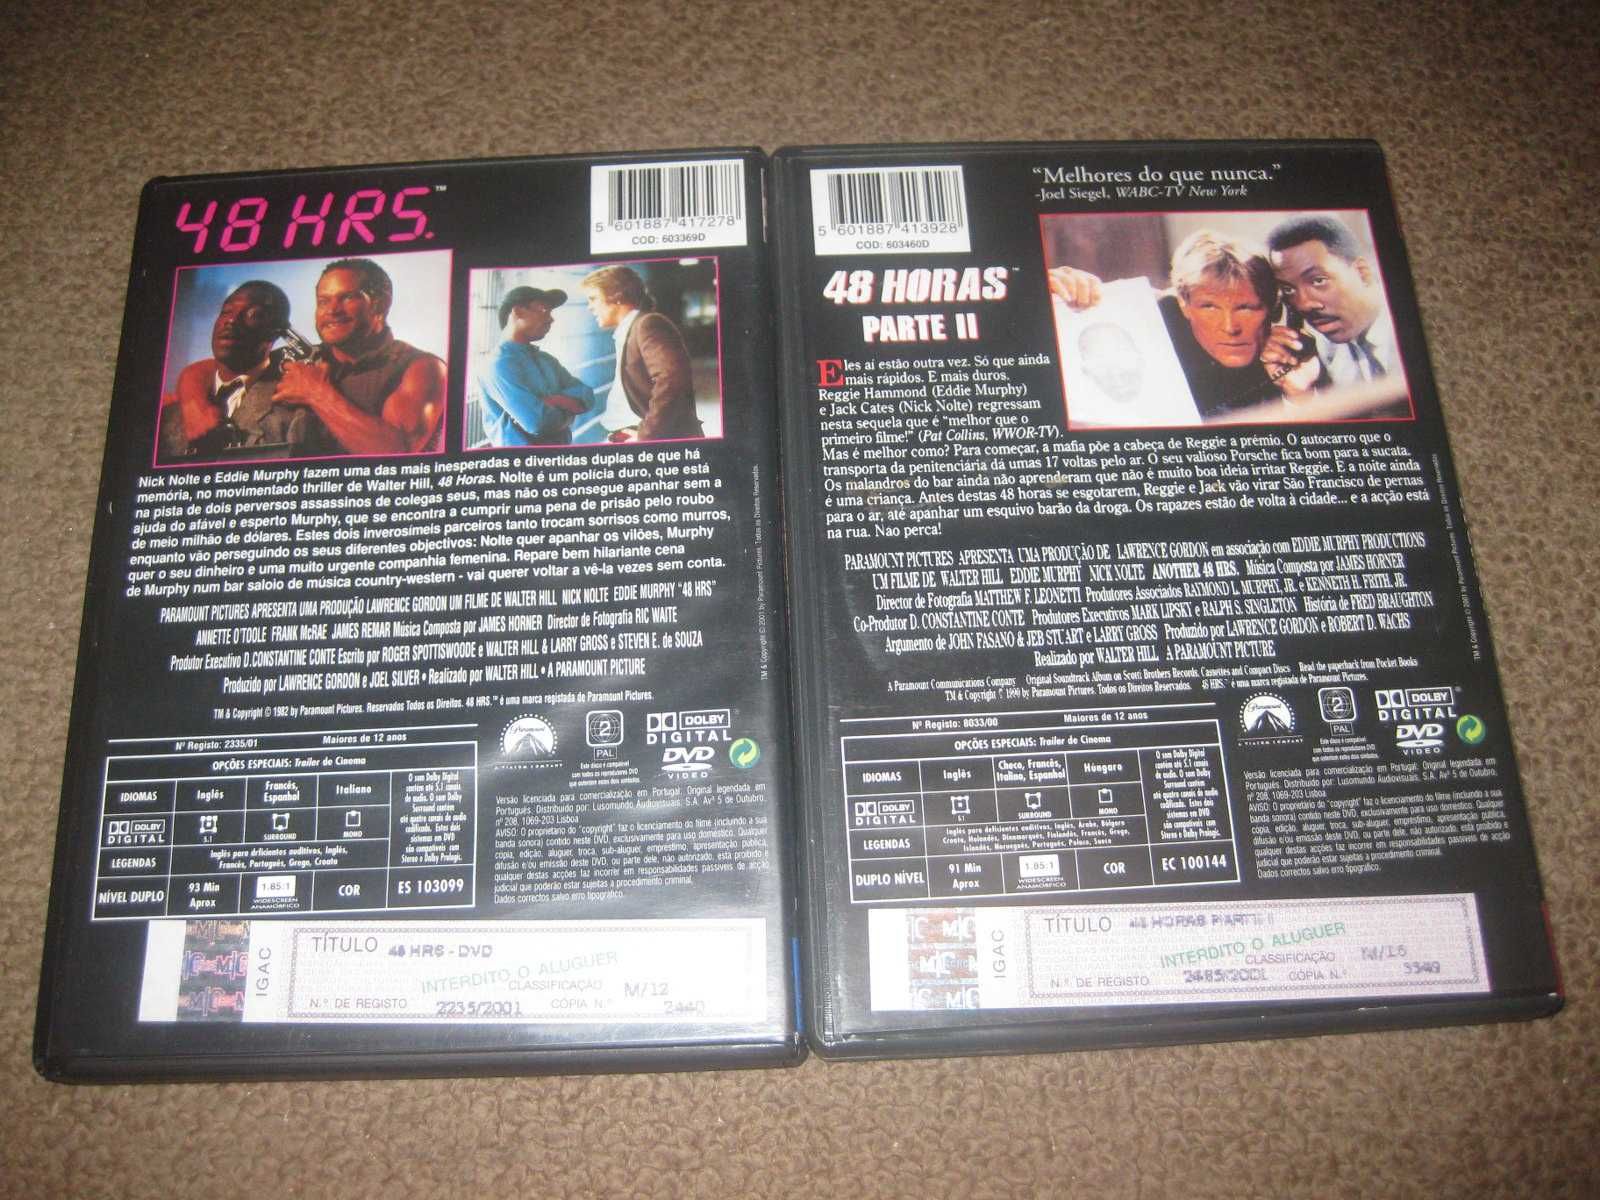 Colecção Completa em DVD "48 Horas" Raros!